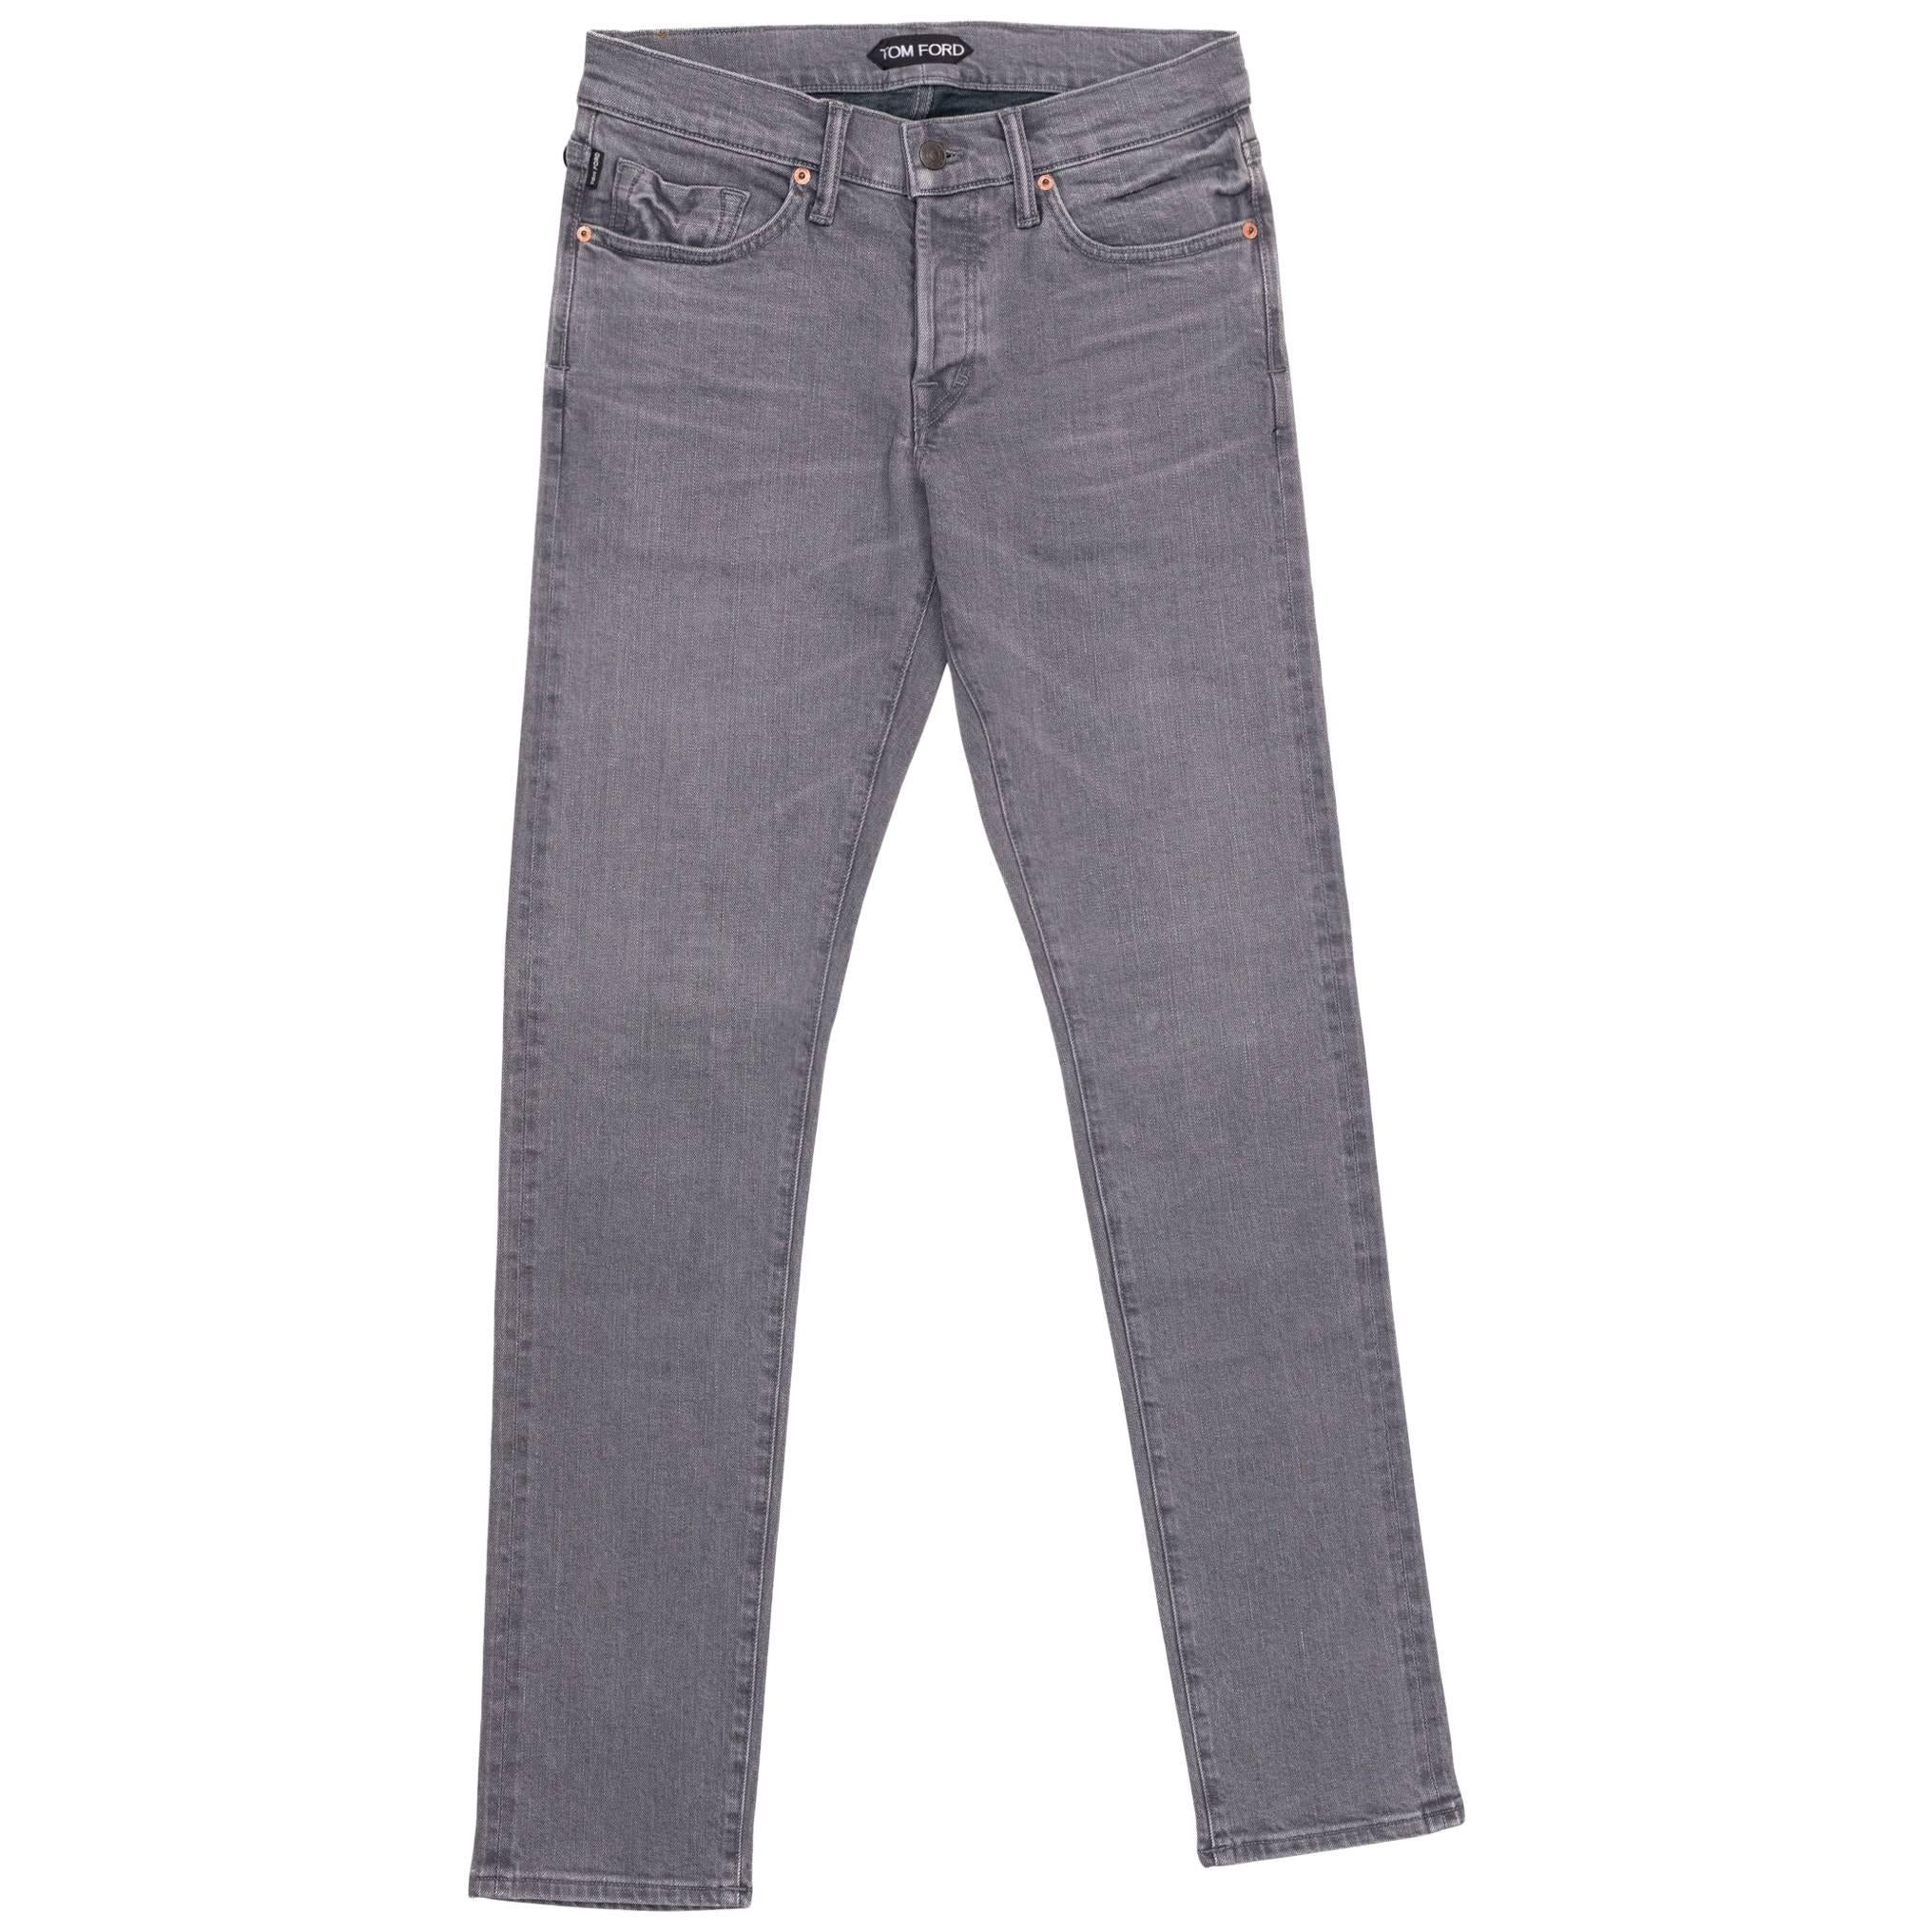  Tom Ford Selvedge Denim Jeans Medium Grey Wash Size 36 Slim Fit Model For Sale